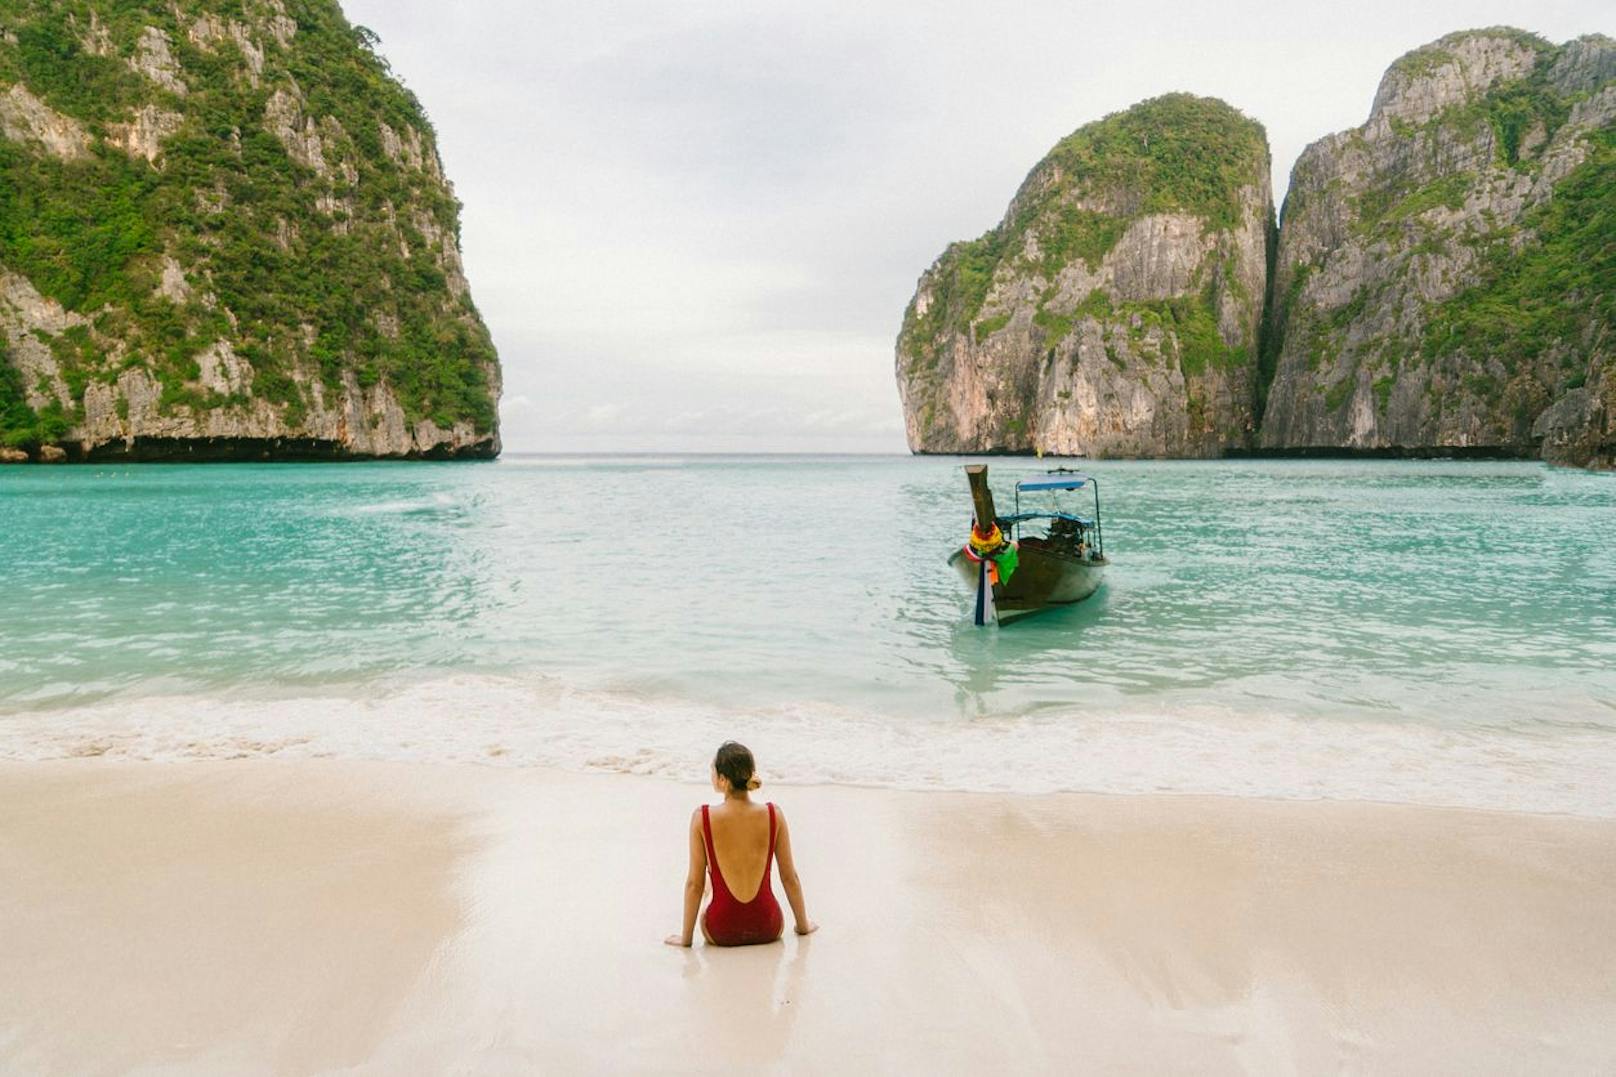 <strong>Platz 5: Maya Bay, Thailand!</strong> Die Maya Bay, Thailands Vorzeigestrand, besticht durch klares blaues Wasser, dramatische Klippen und wunderschönen weißen Sand. Sie ist nicht nur ein Meisterwerk der Natur, sondern auch ein Hollywood-Star dank "The Beach" und Leonardo DiCaprio. Plötzlich will jeder ein Stück von Leos Paradies, was Maya Bay zum ultimativen Reiseziel auf der Bucketlist macht.&nbsp;Doch aufgepasst: Der Traumstrand ist oft von Touristen überlaufen. Es lohnt sich, die Bucht zu Randzeiten zu besuchen. Selfies sind weiterhin erlaubt, Baden hingegen ist verboten. Boote dürfen die Maya Bay nicht mehr von der Bucht her ansteuern, sondern müssen an der anderen Seite der Insel ankern. So sollen Boote aus der Bucht ferngehalten werden.